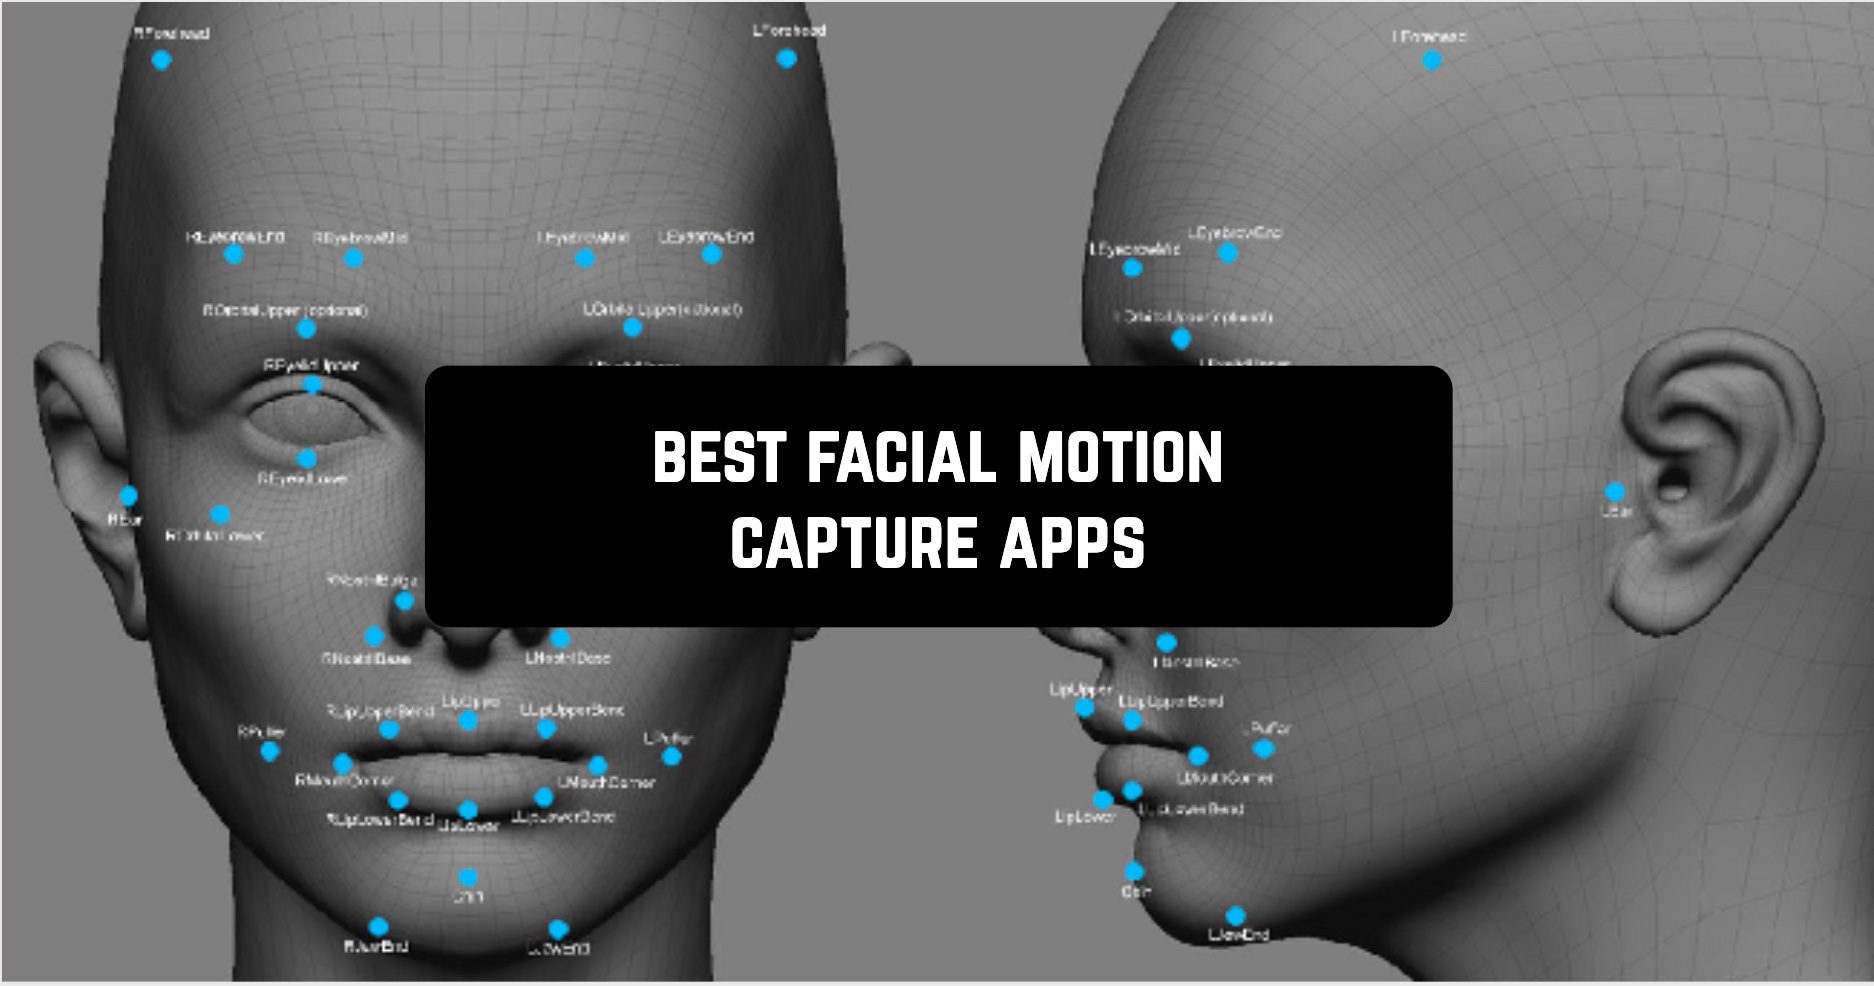 Best facial motion capture apps